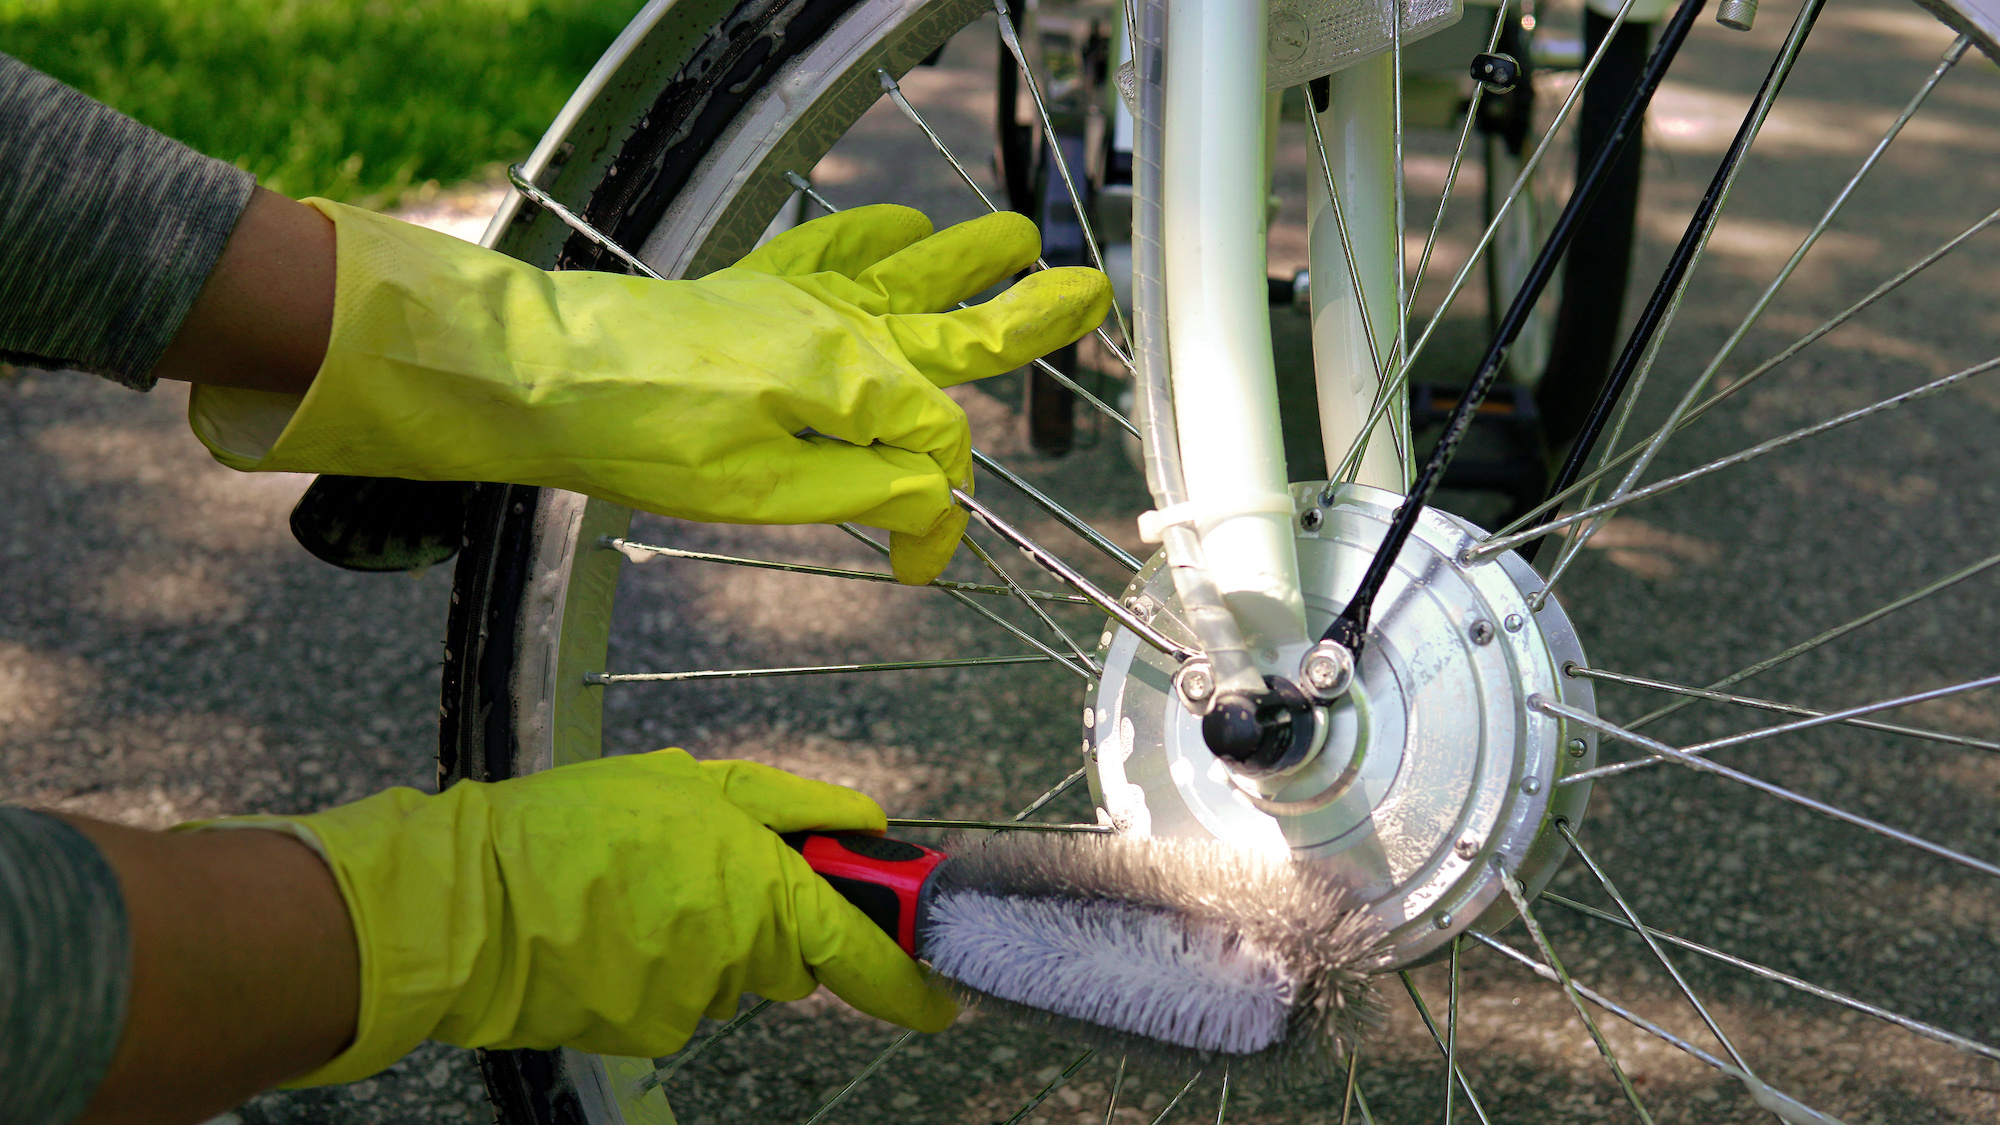 opraken Graveren Visser Tips voor onderhoud aan een elektrische fiets | viaBOVAG.nl